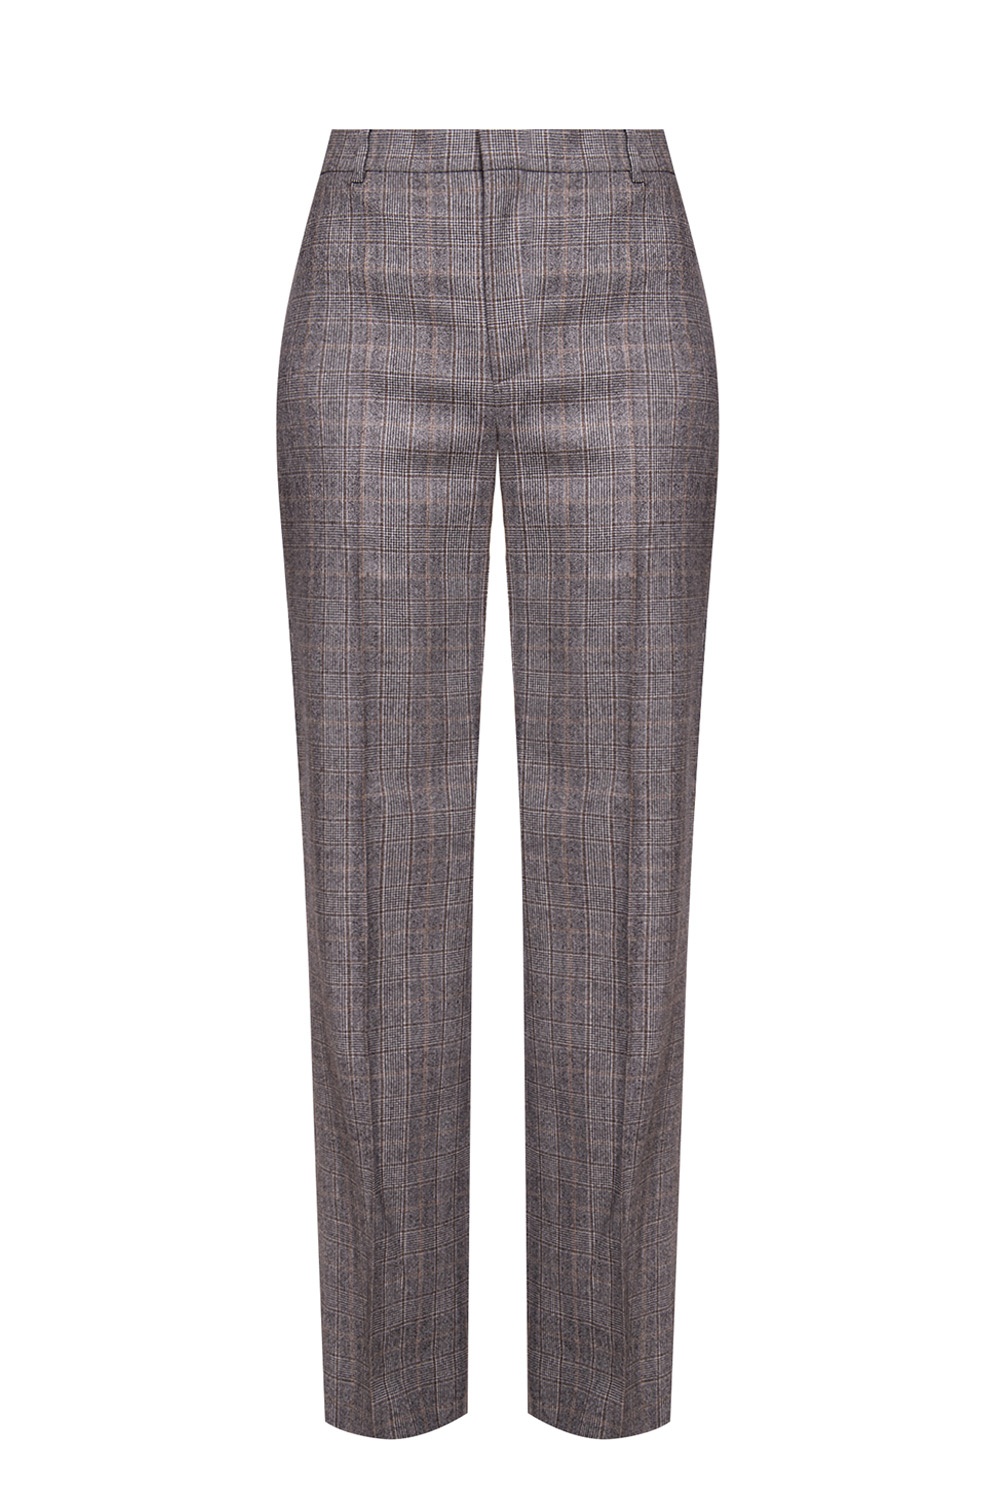 indkomst udslæt Adskille Grey Patterned creased trousers Balenciaga - Vitkac KR